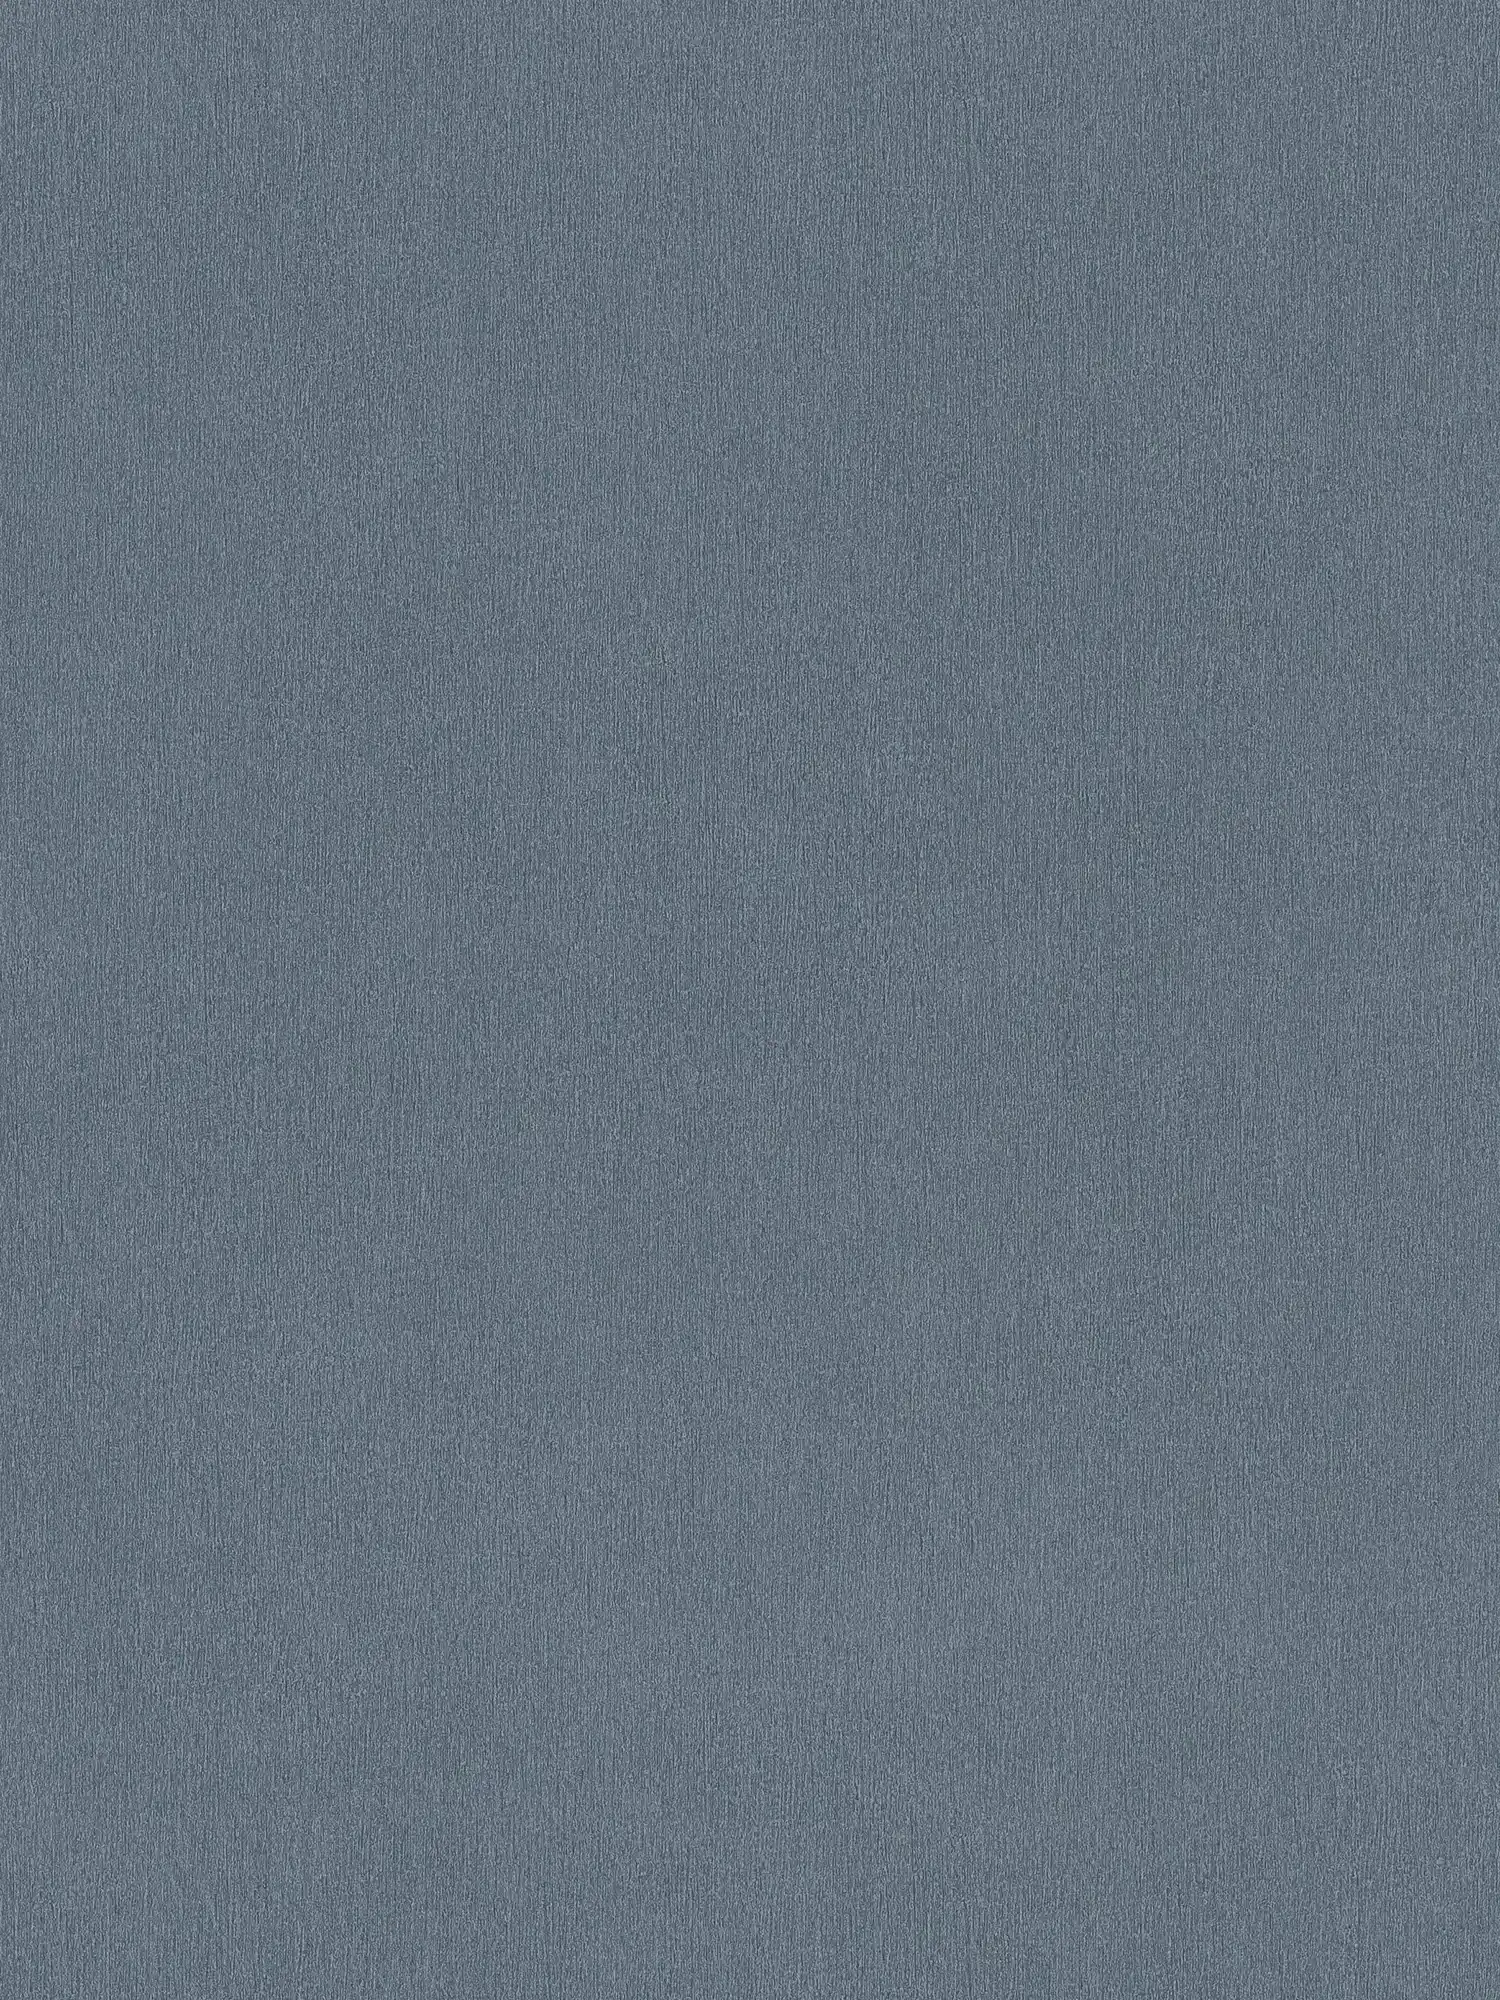 Papel pintado gris oscuro no tejido, monocolor con sombreado de color
